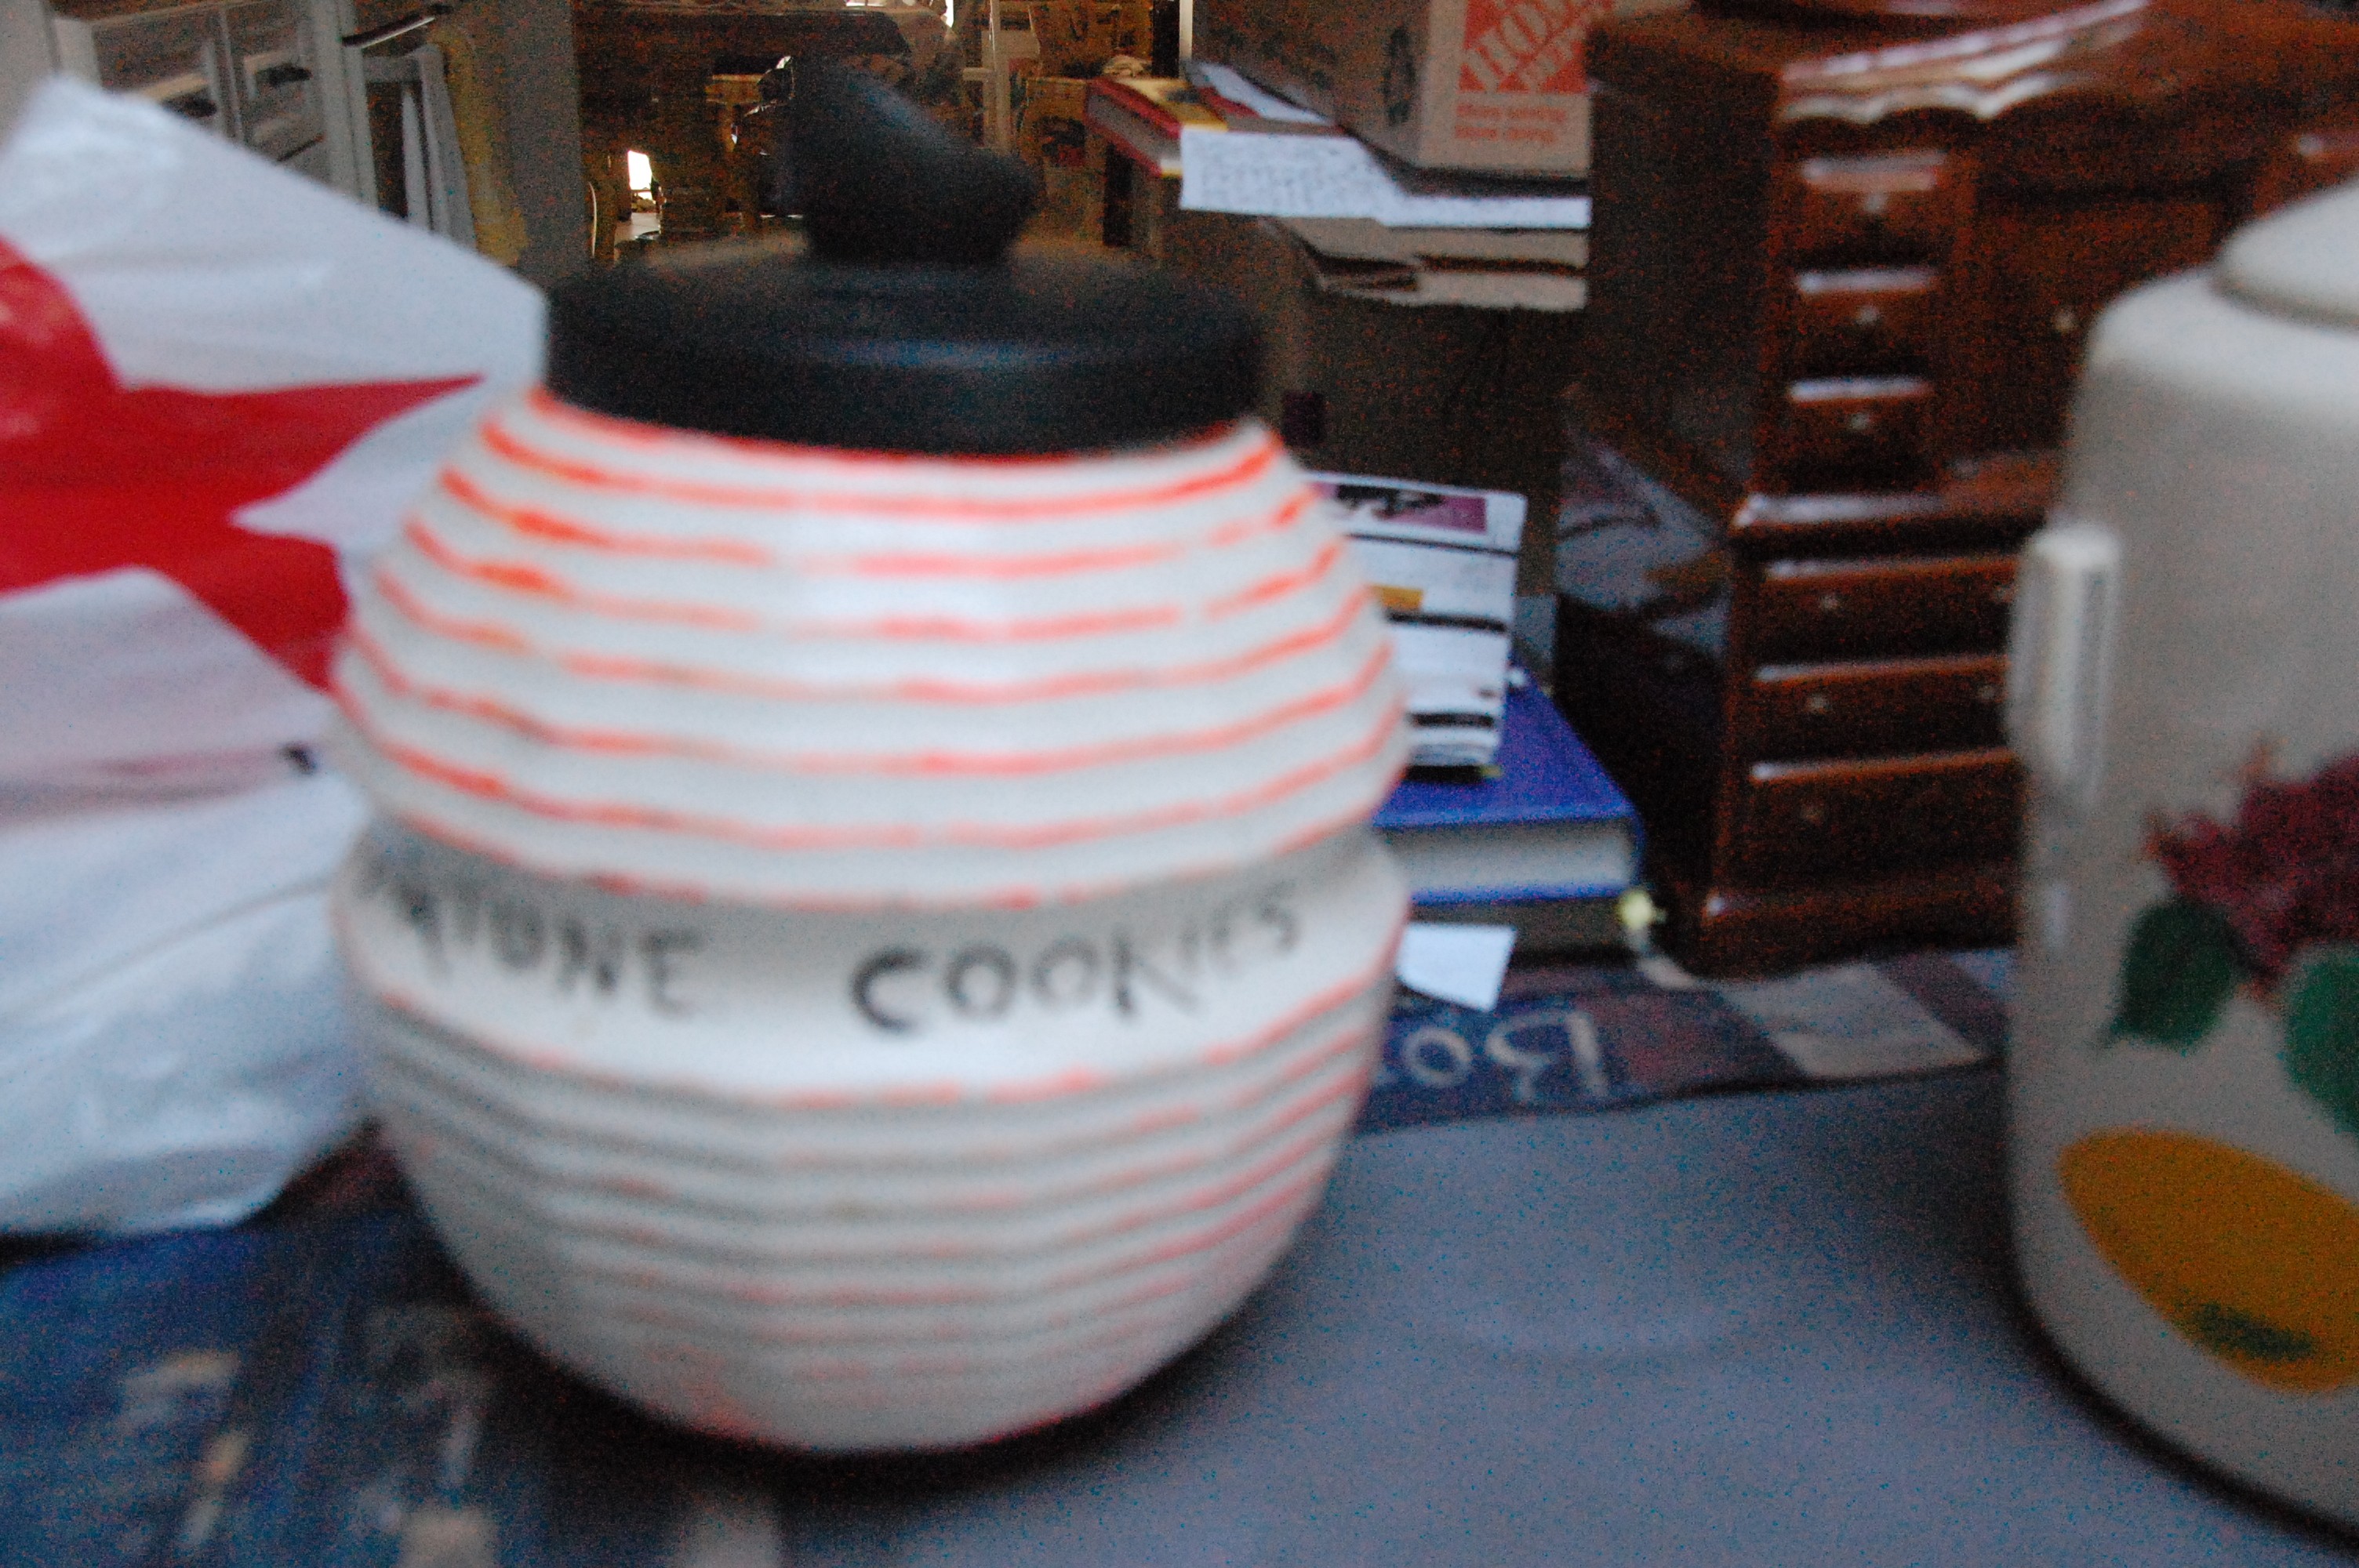 Fortune Cookie Cookie Jar